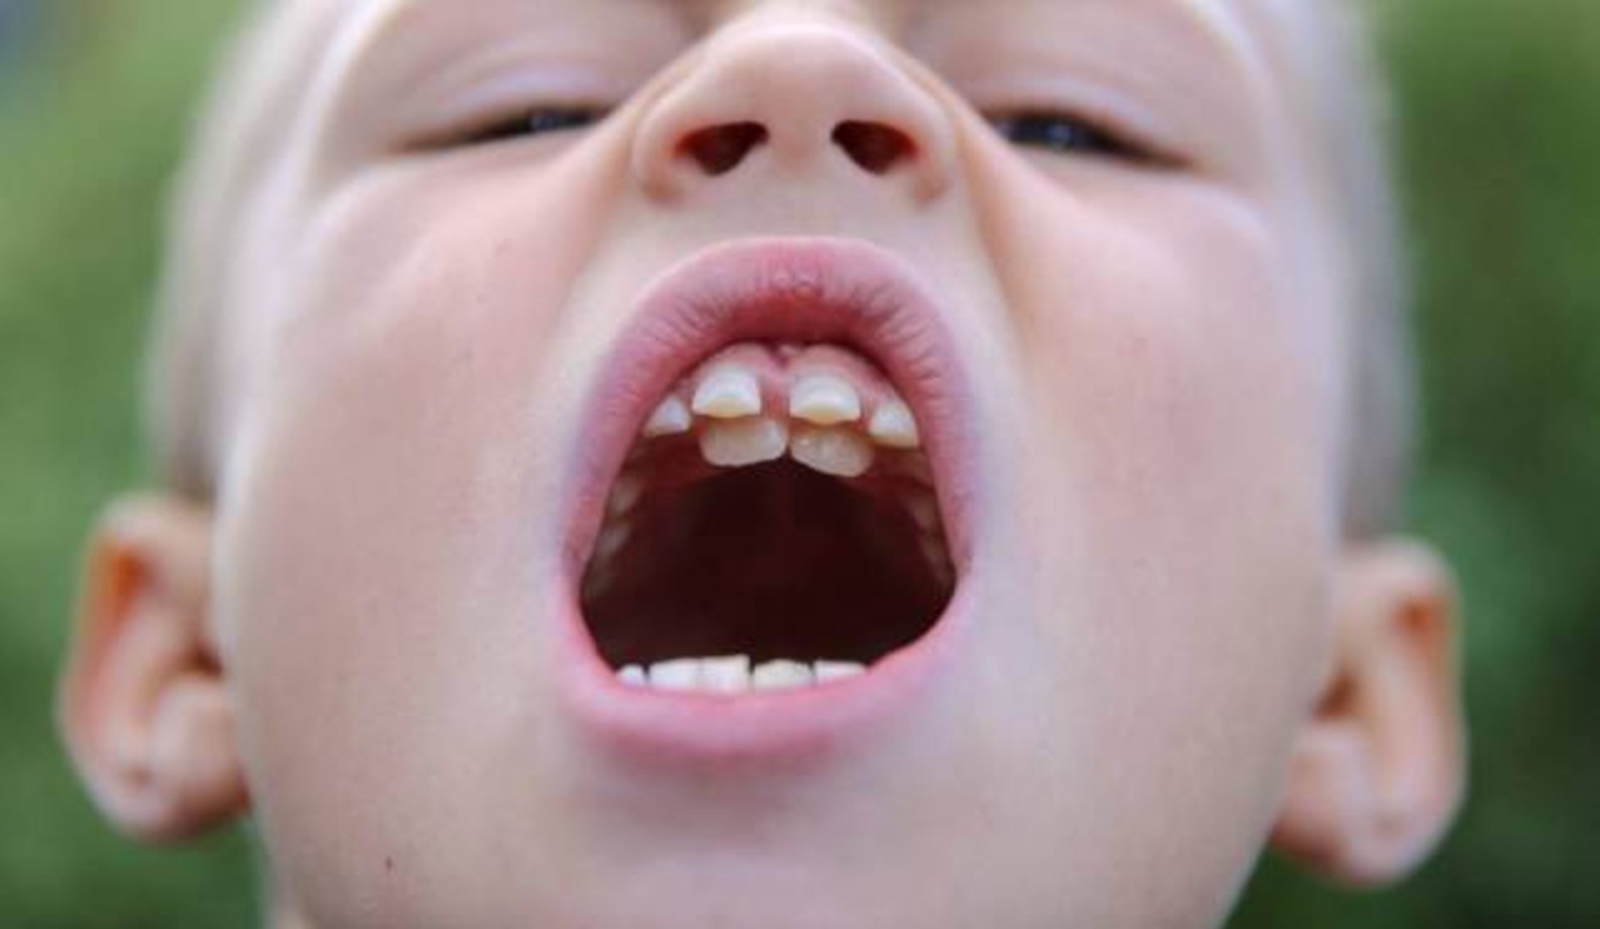  Cách xử lý răng mọc lệch - Tìm hiểu về công dụng đặc biệt của răng mực